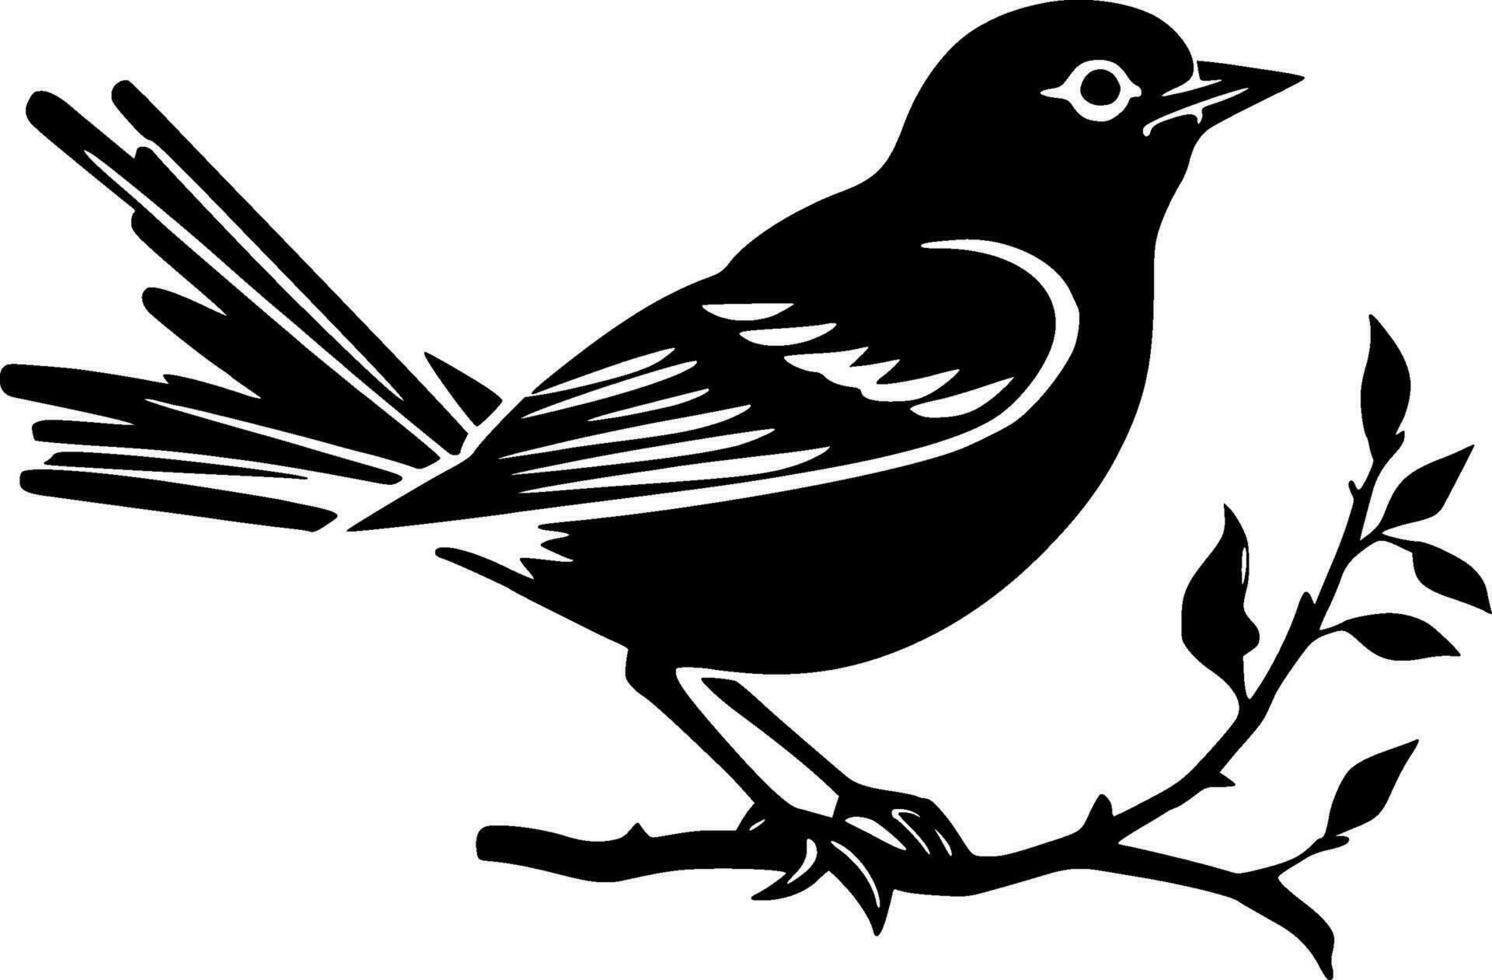 fågel - minimalistisk och platt logotyp - vektor illustration